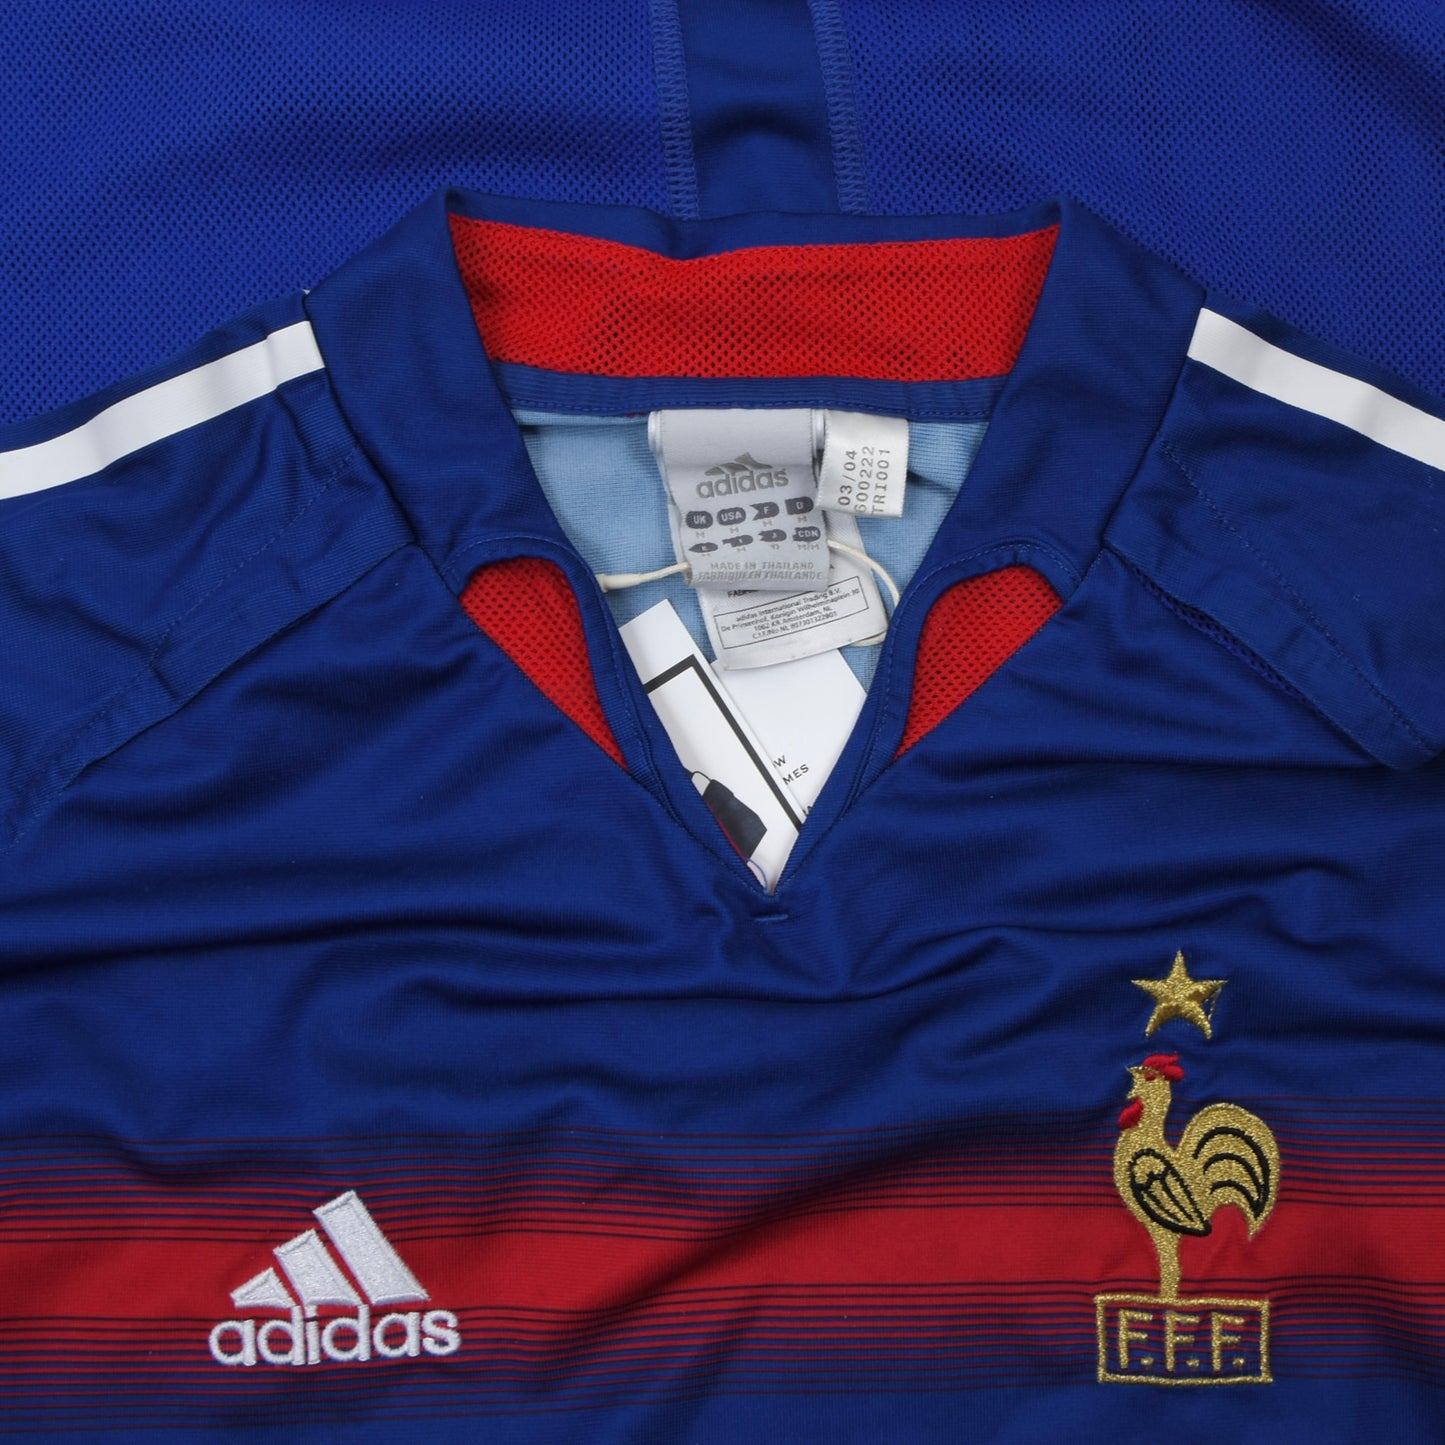 Adidas France 2004-2006 Jersey #10 Zidane Größe M - Blau